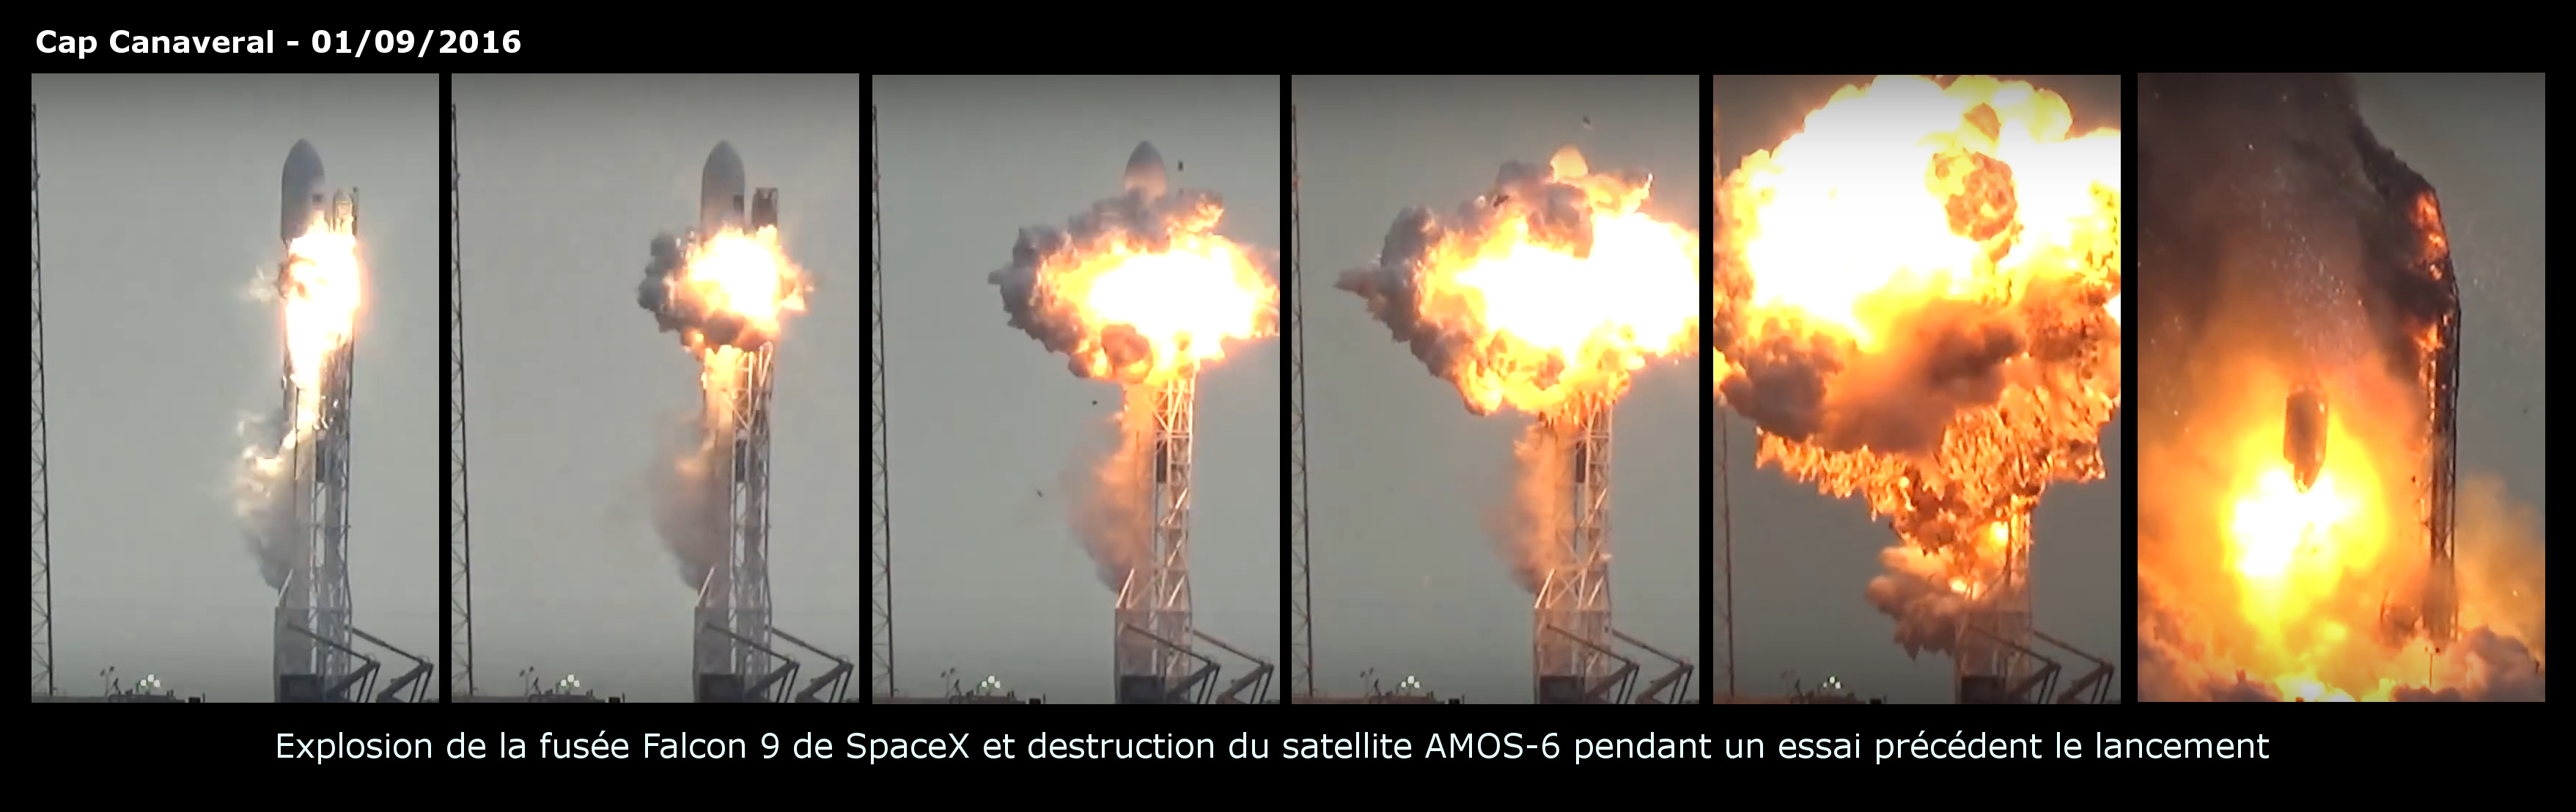 Explosion - Falcon 9 - SpaceX - AMOS-6 - Accident - Cap Canaveral - septembre 2016 - static fire test - destruction lanceur - 